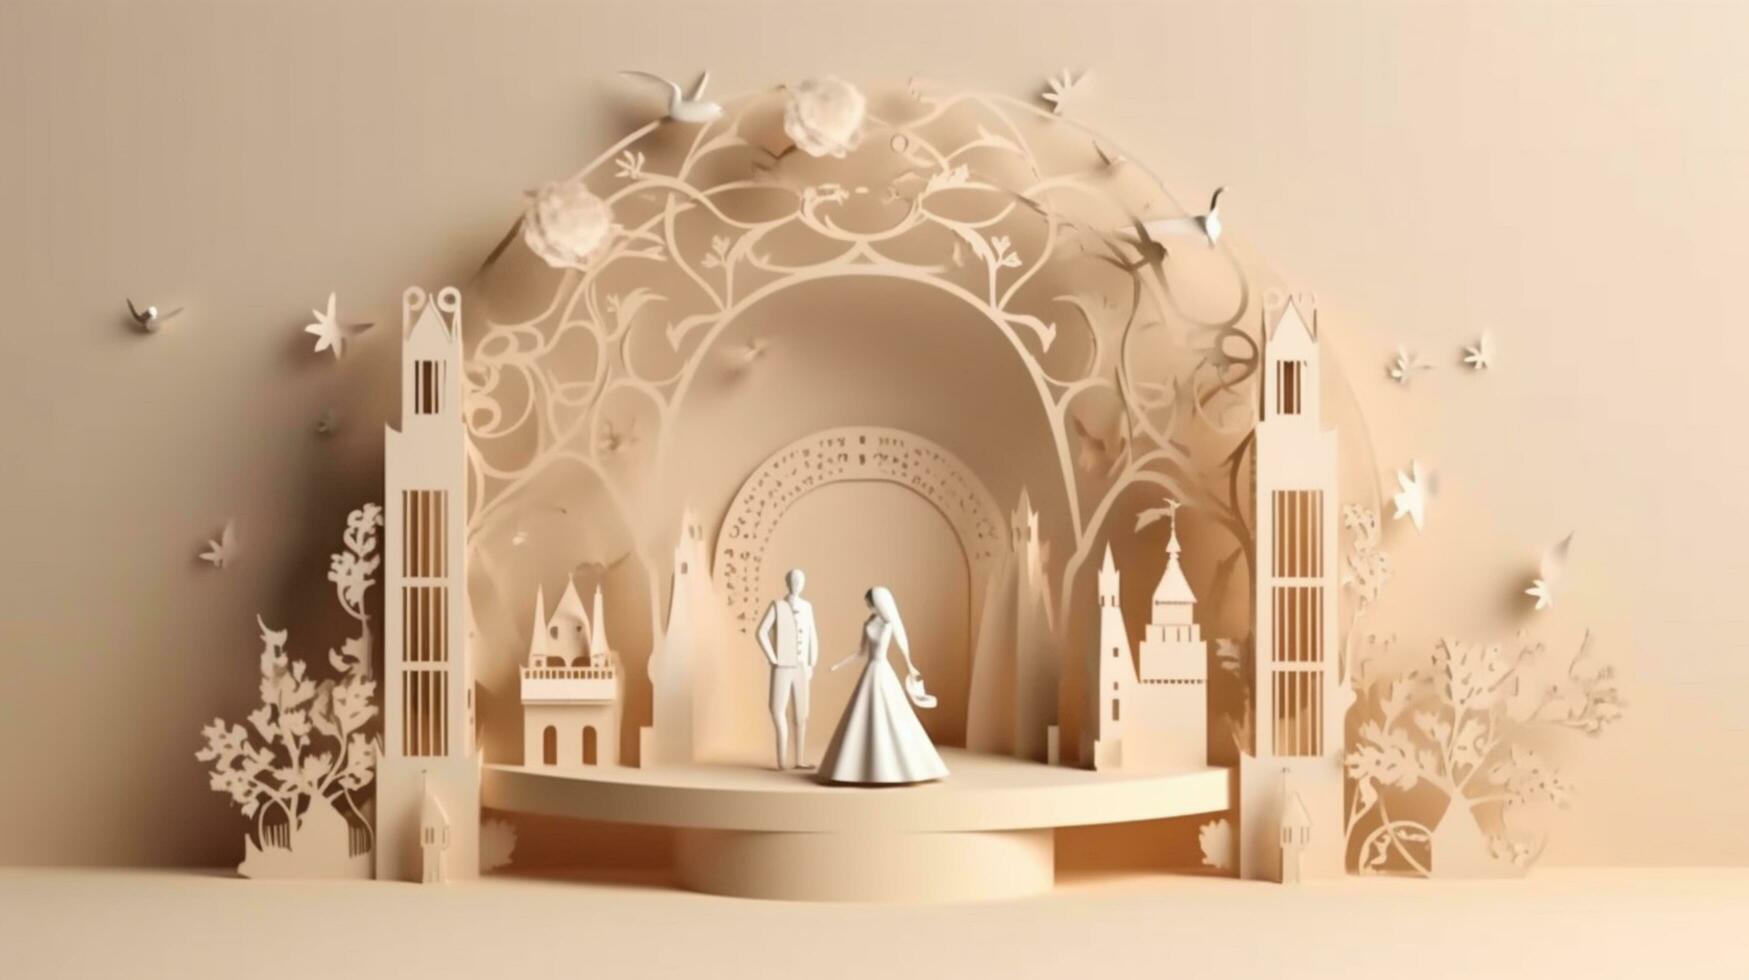 bruiloft uitnodiging 3d ontwerp sjabloon achtergrond foto